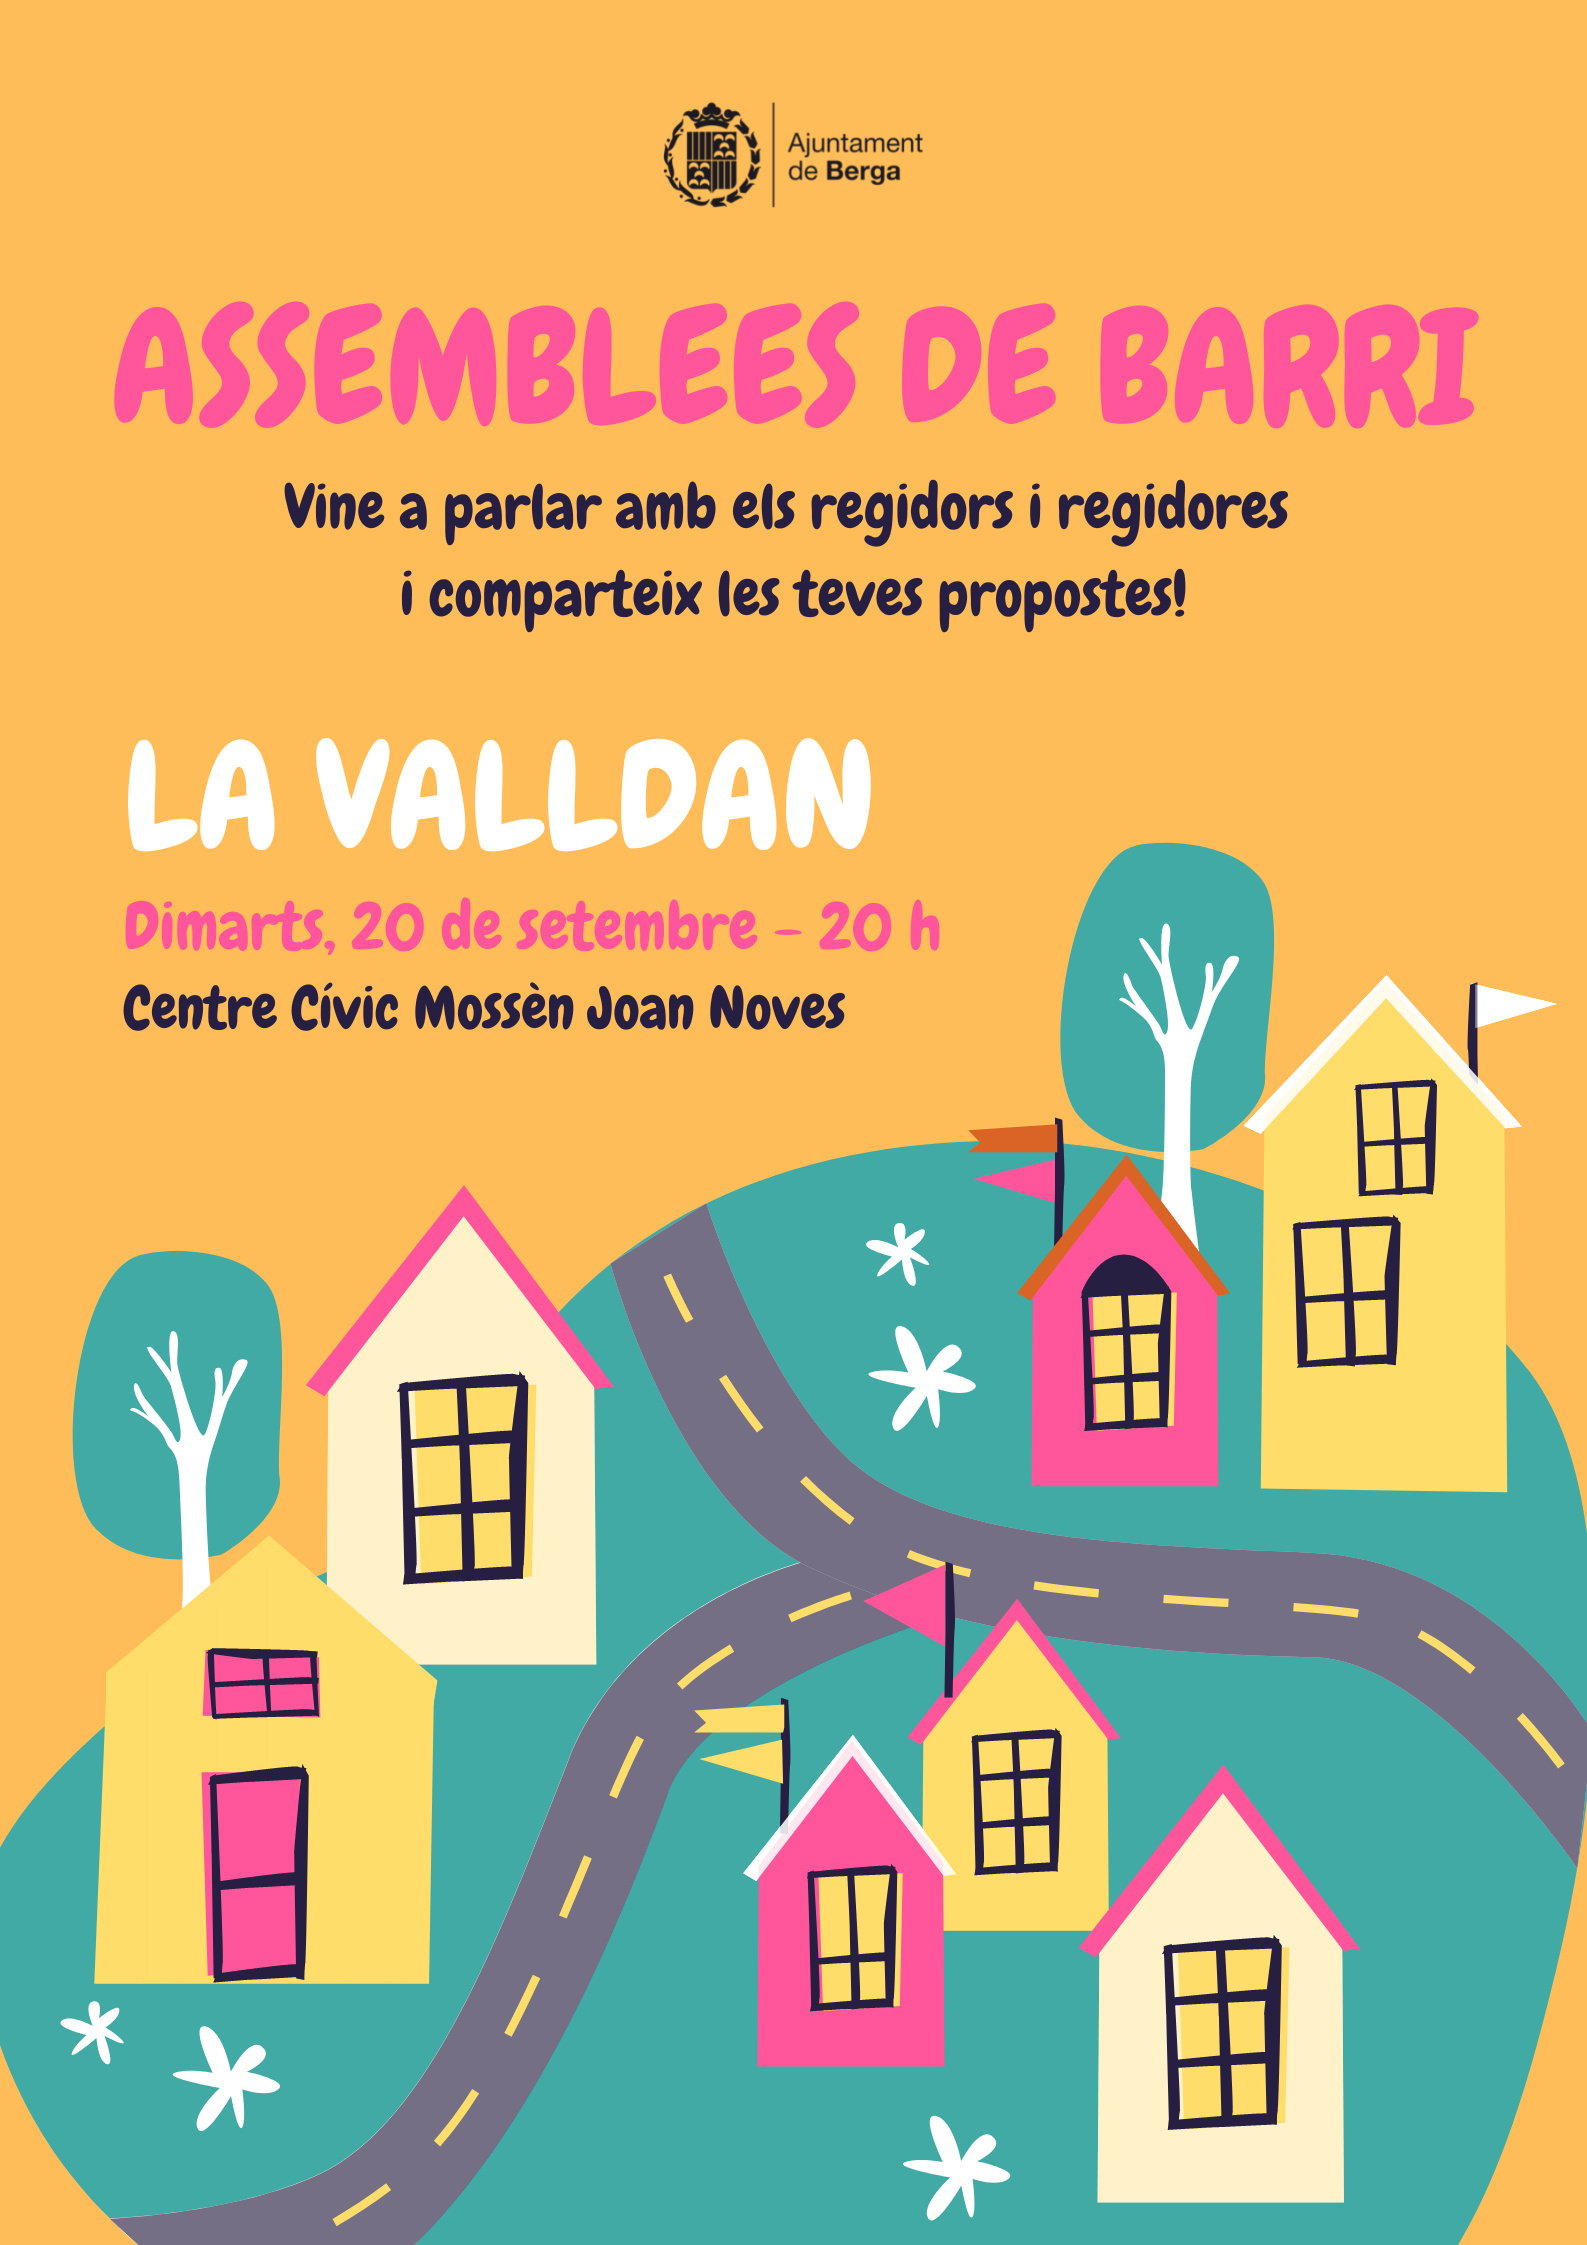 Assemblees de barri: La Valldan 